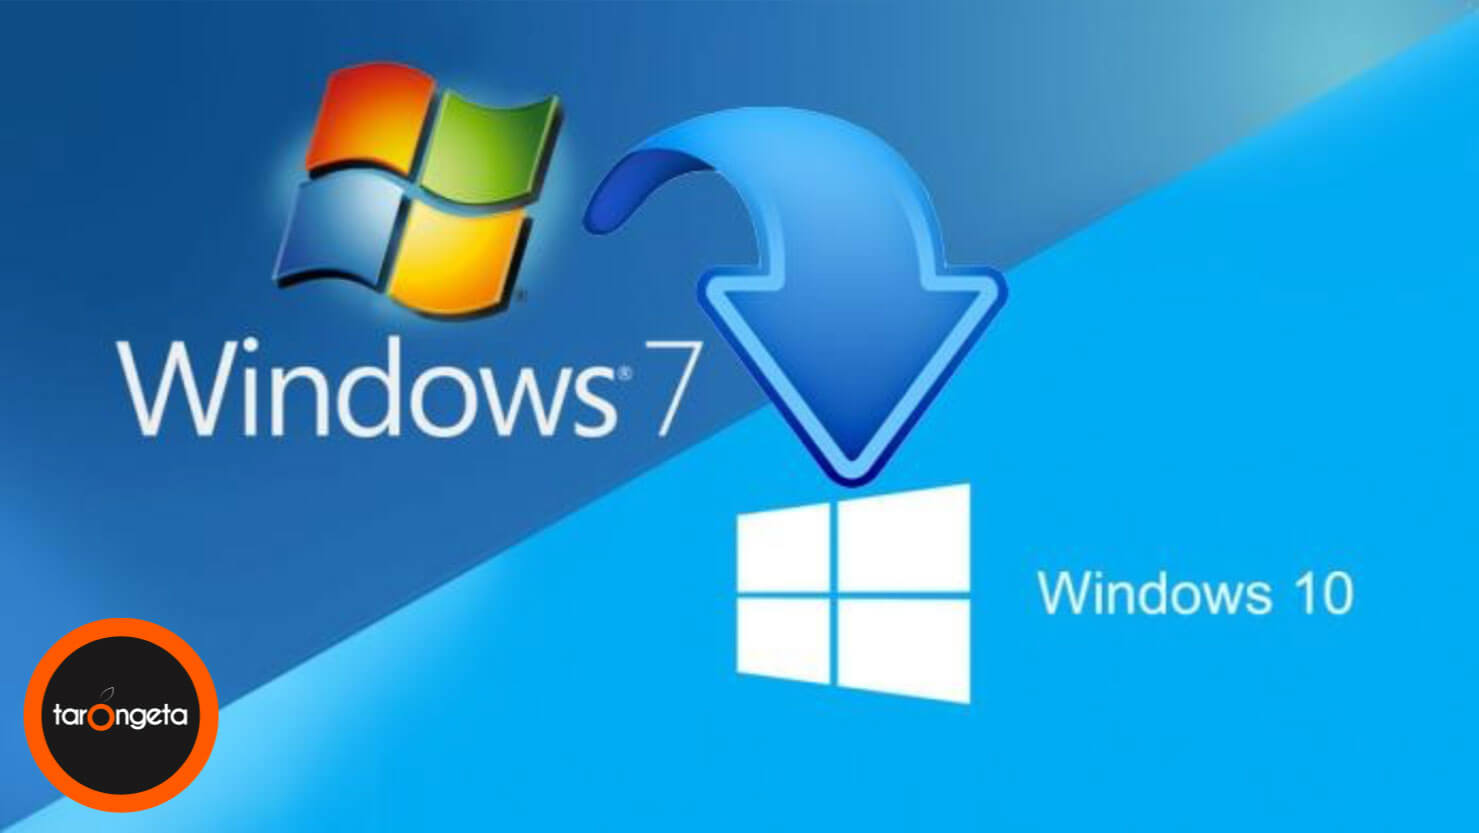 Llega El Fin Del Soporte De Windows 7 La Tarongeta Informàtica 0303